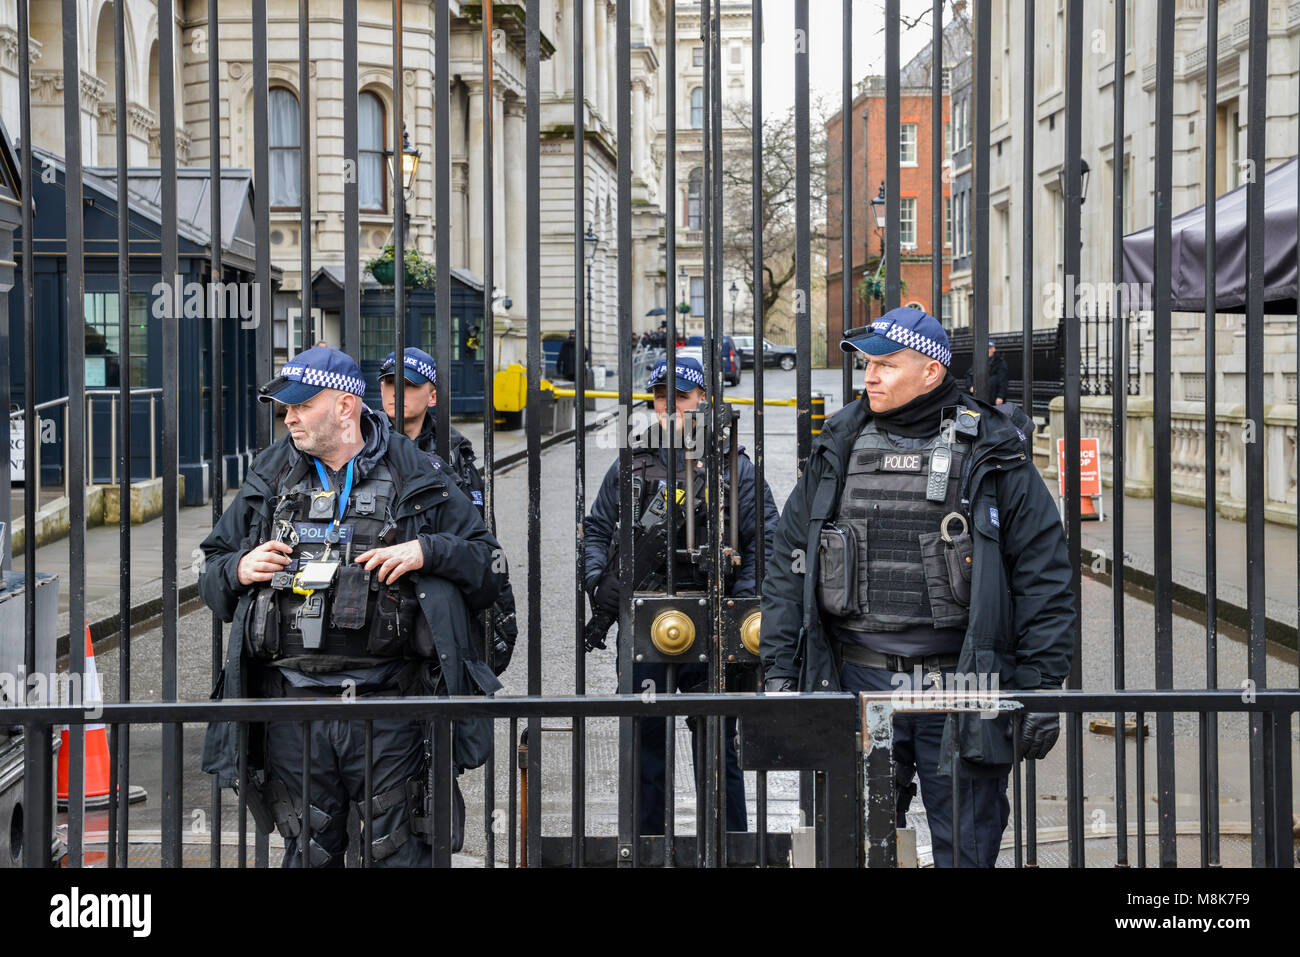 En présence de sécurité lourd devant le bureau du premier ministre au 10 Downing Street dans la ville de Westminster, Londres, Angleterre, Royaume-Uni Banque D'Images